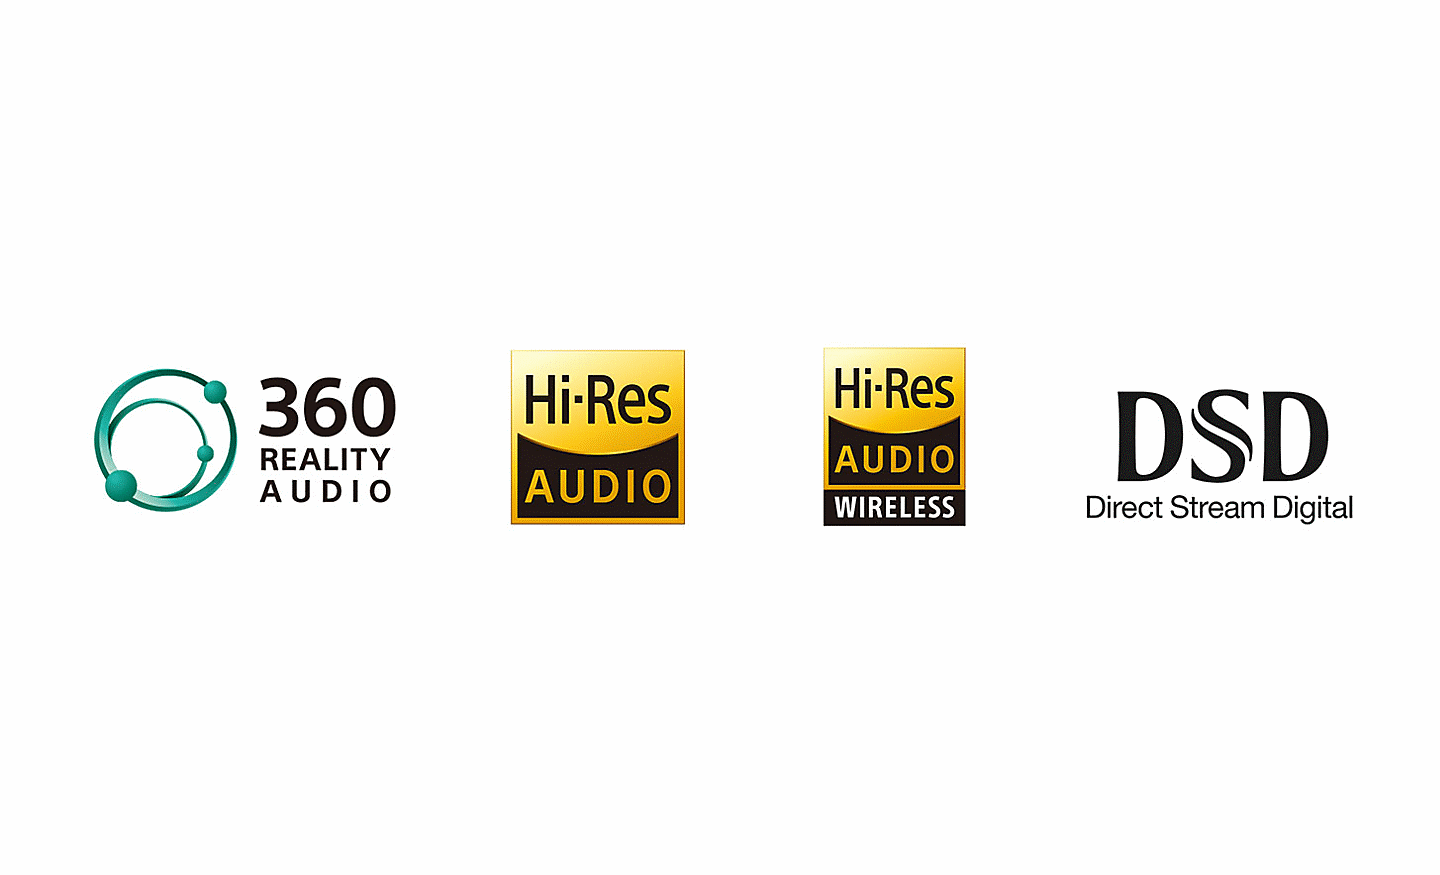 360 Reality Audio logója, Hi-Res Audio logója, Hi-Res Audio Wireless logója, DSD Direct Stream Digital logója